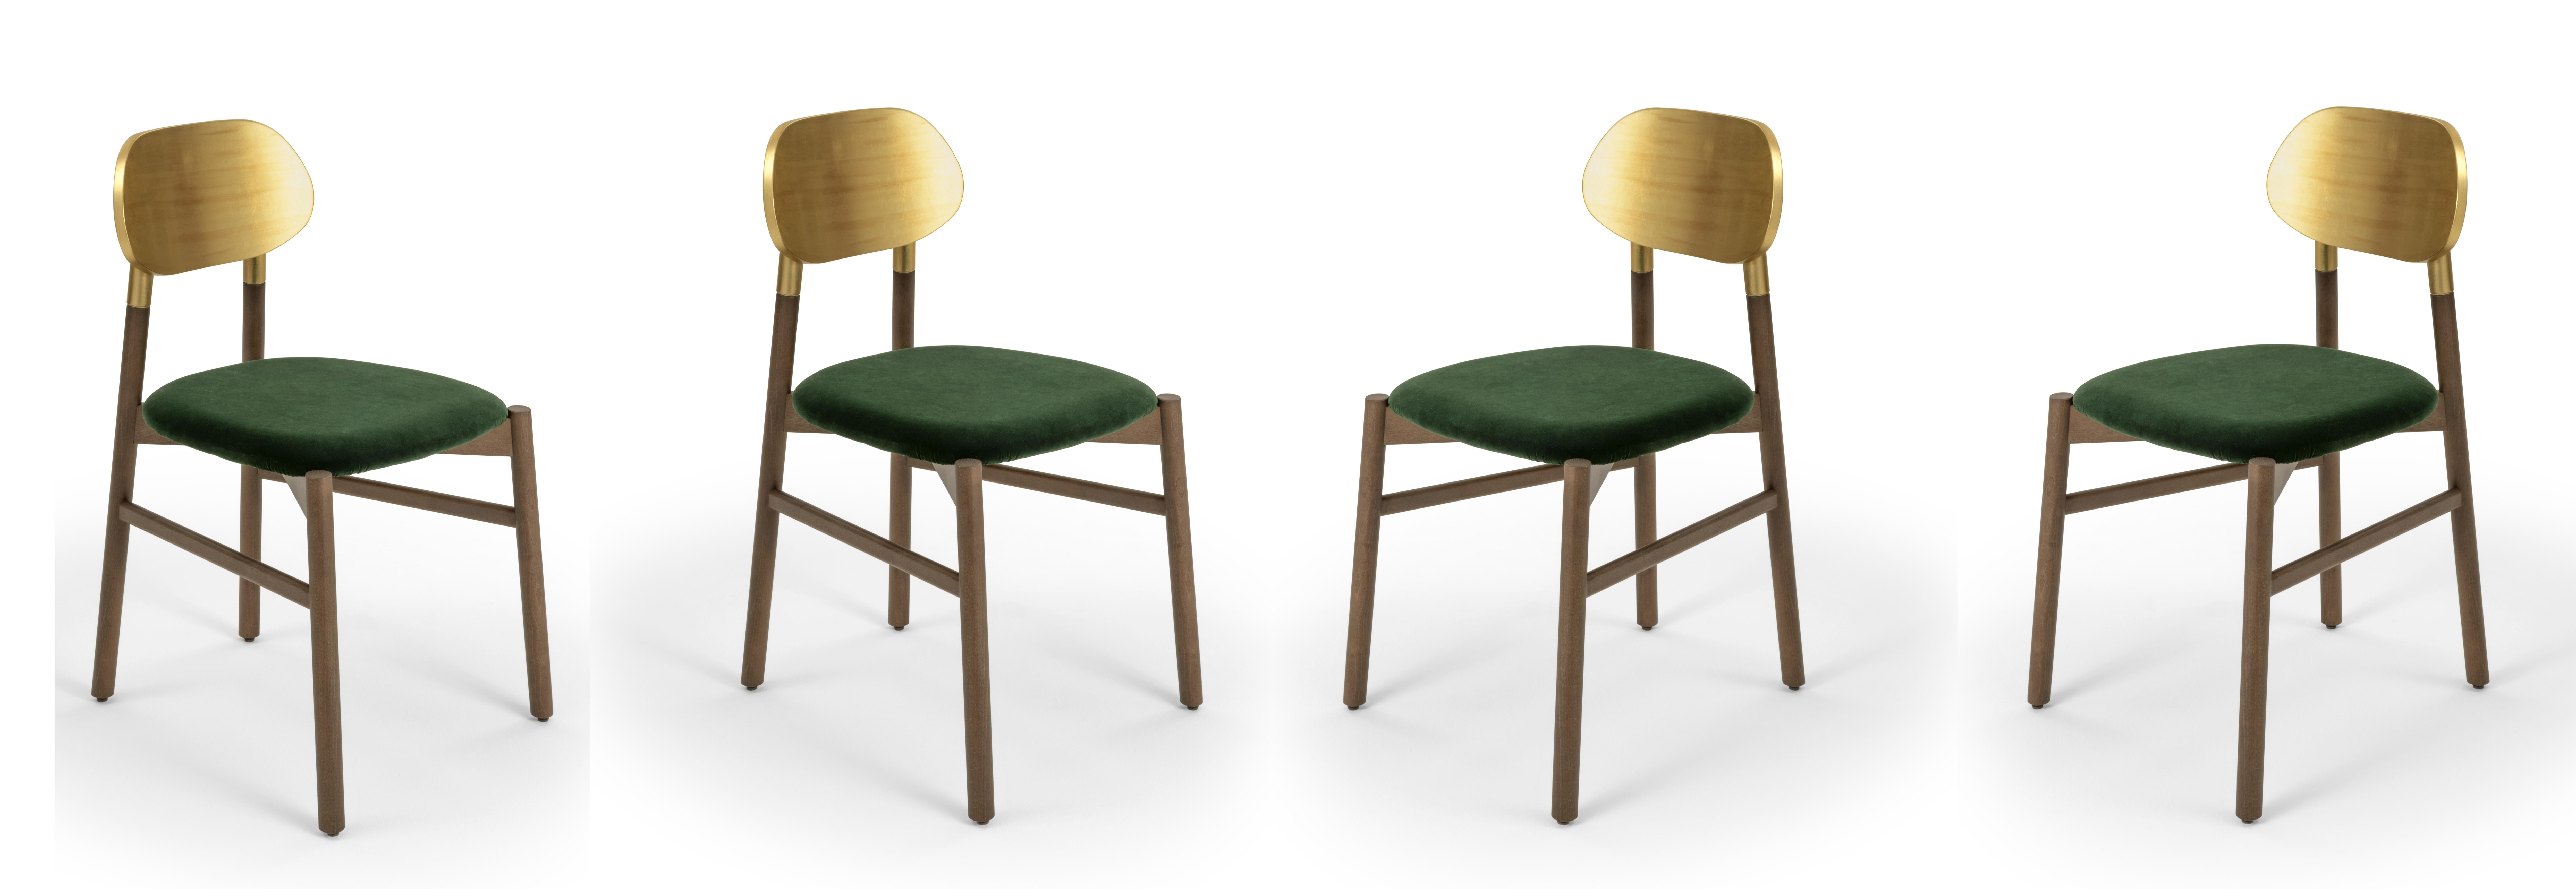 Bokken Chair Upholstered Walnut, Gold Leaf Back, Italian Emerald Green Velvet For Sale 2